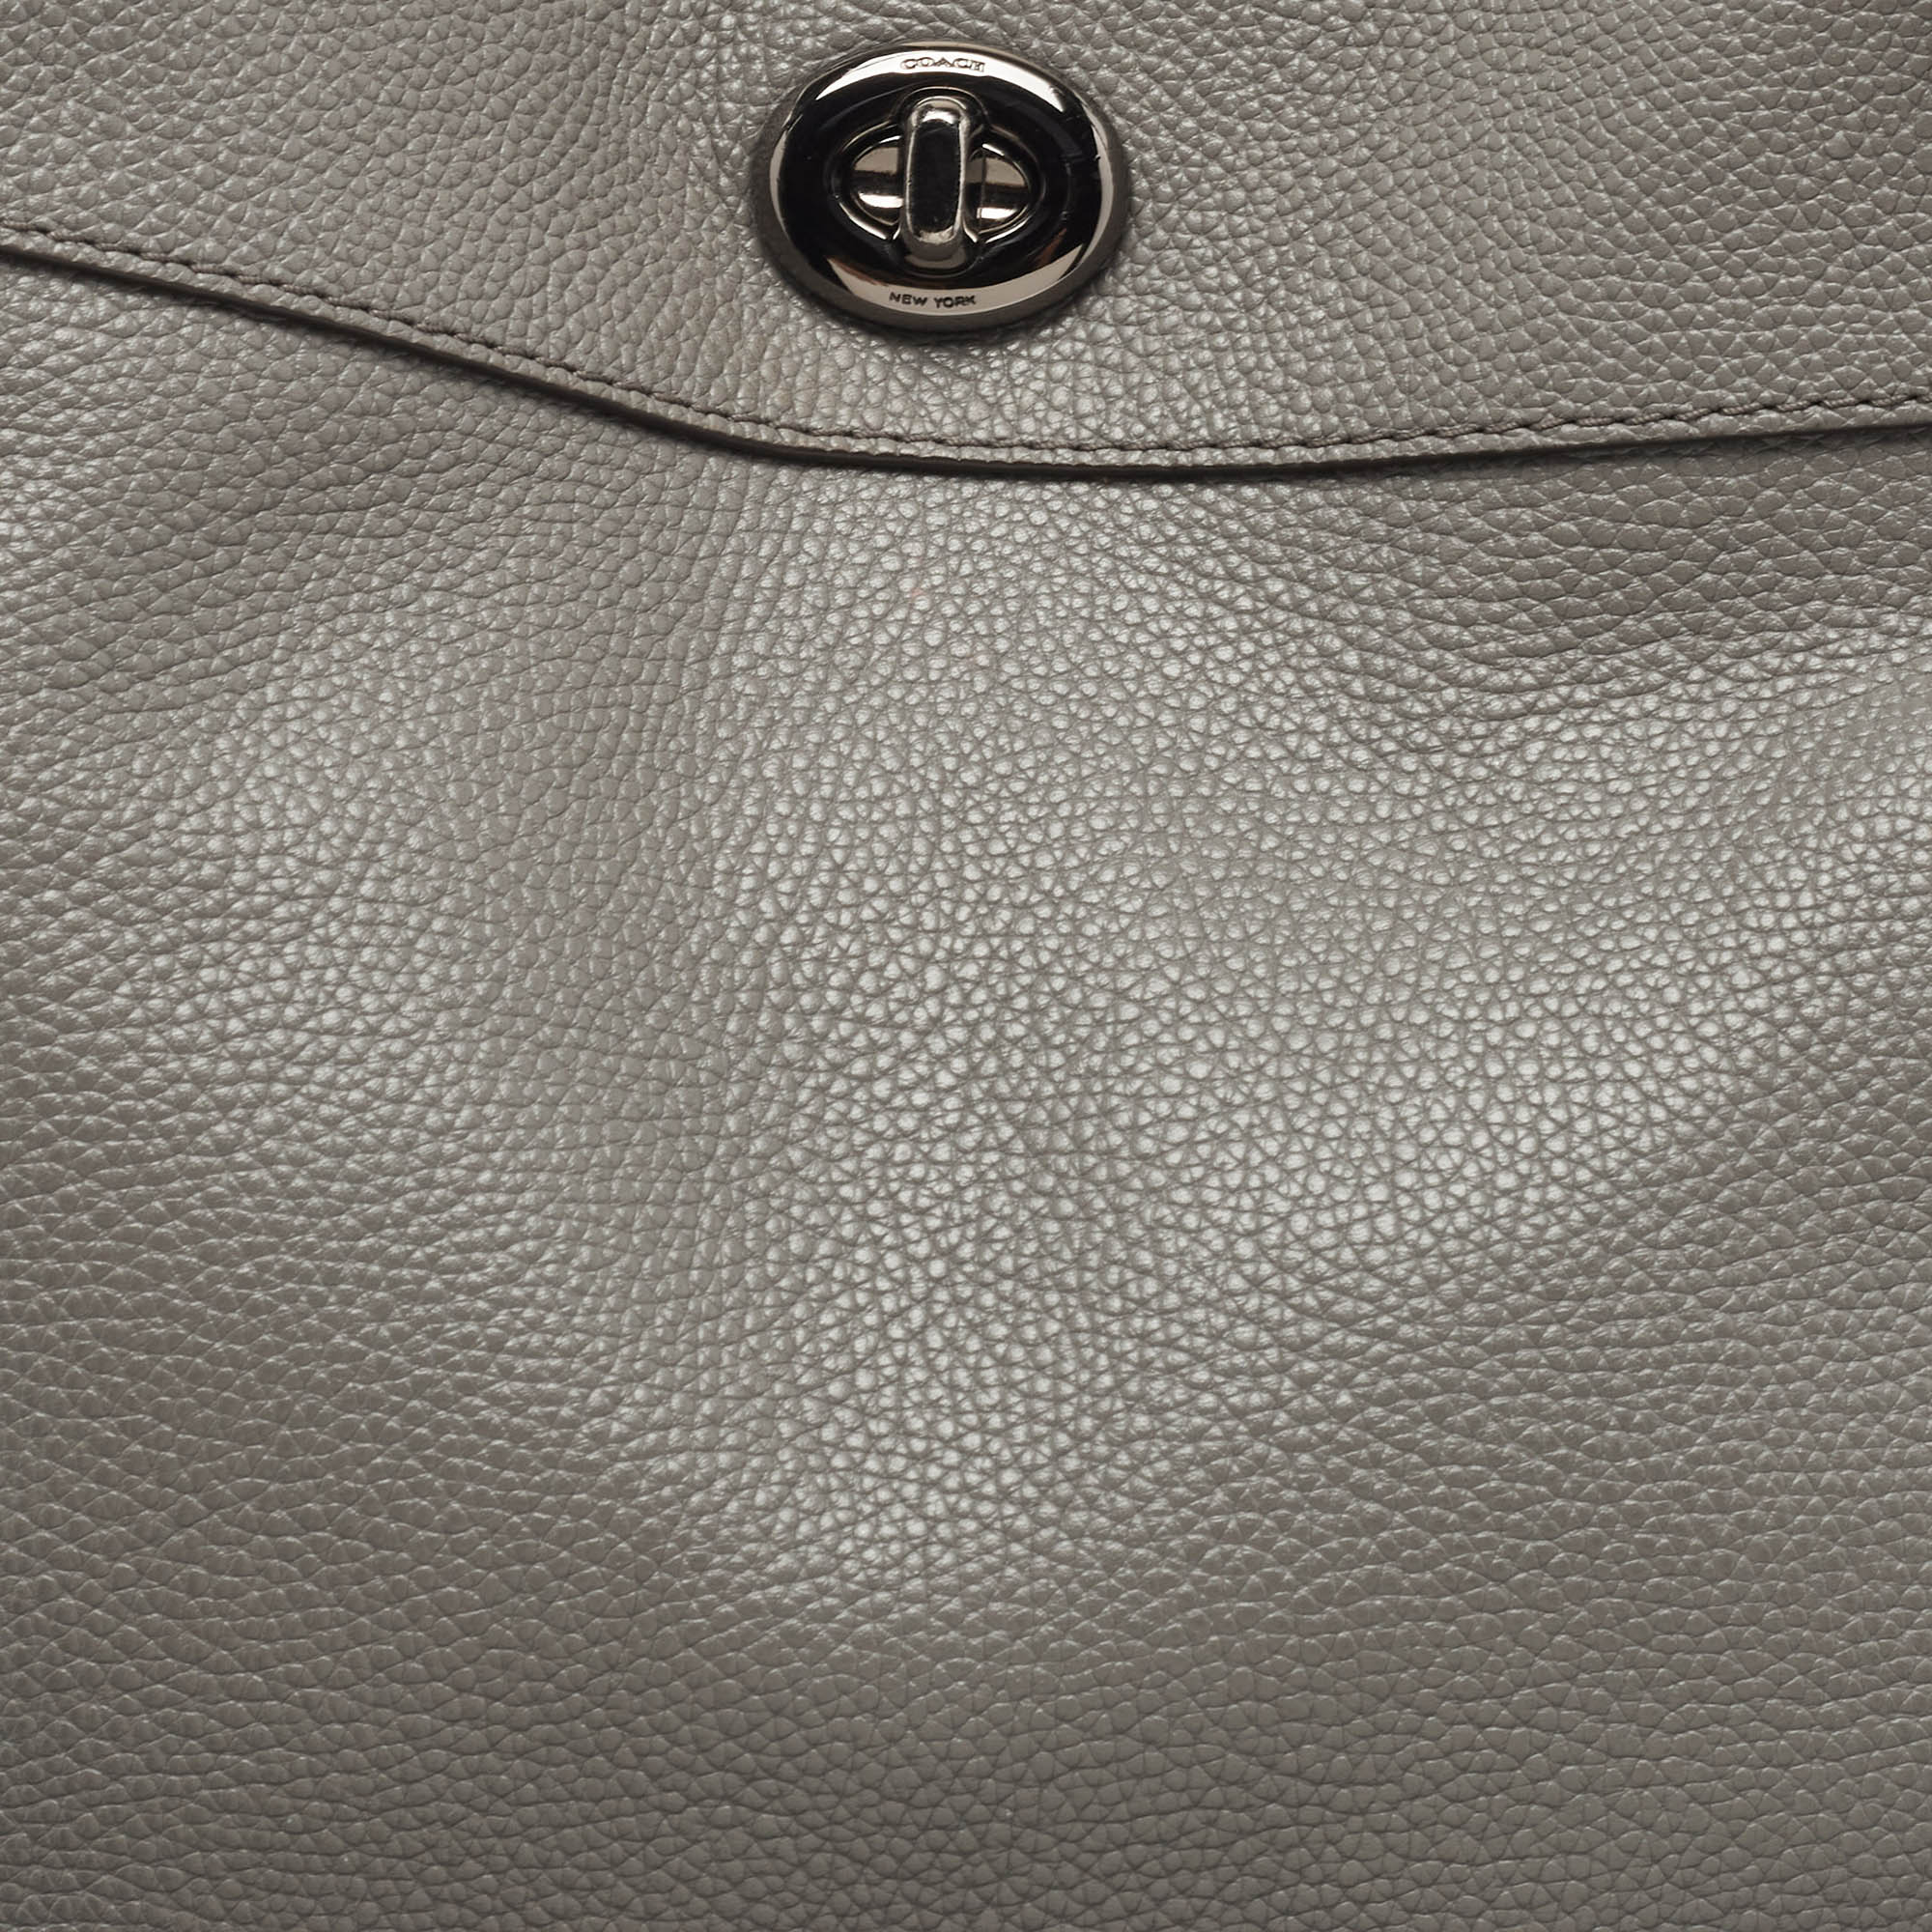 Coach Grey Leather Turnlock Edie Shoulder Bag